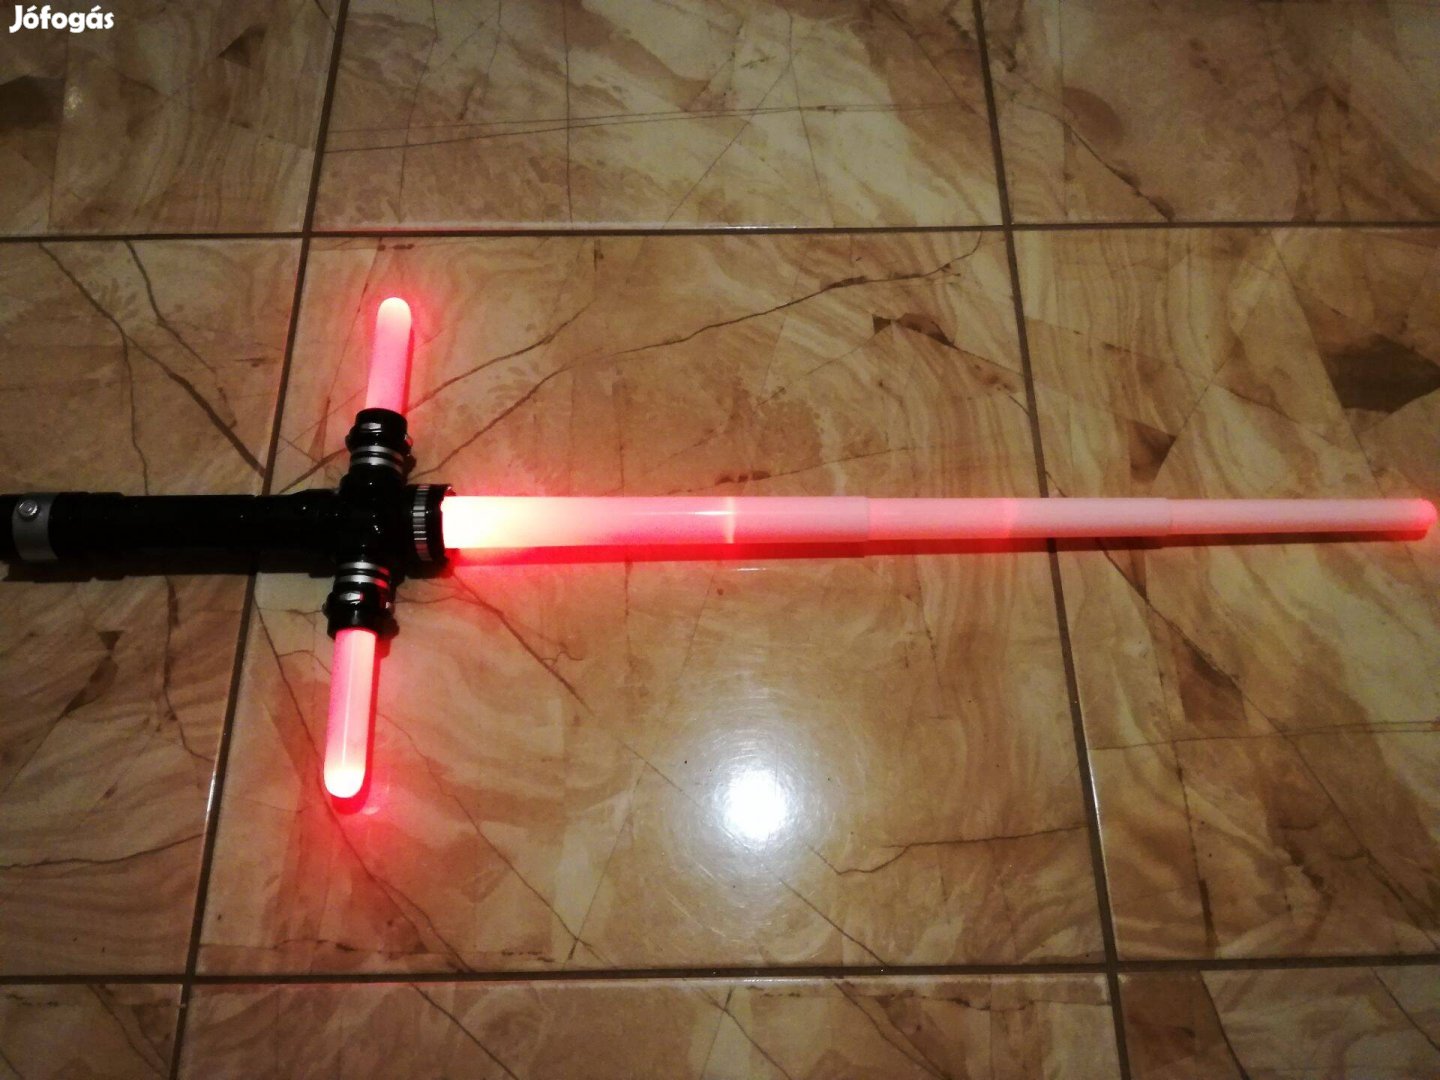 Új színváltós Star Wars Kylo Ren lézerkard lézer kard fénykard jelmez